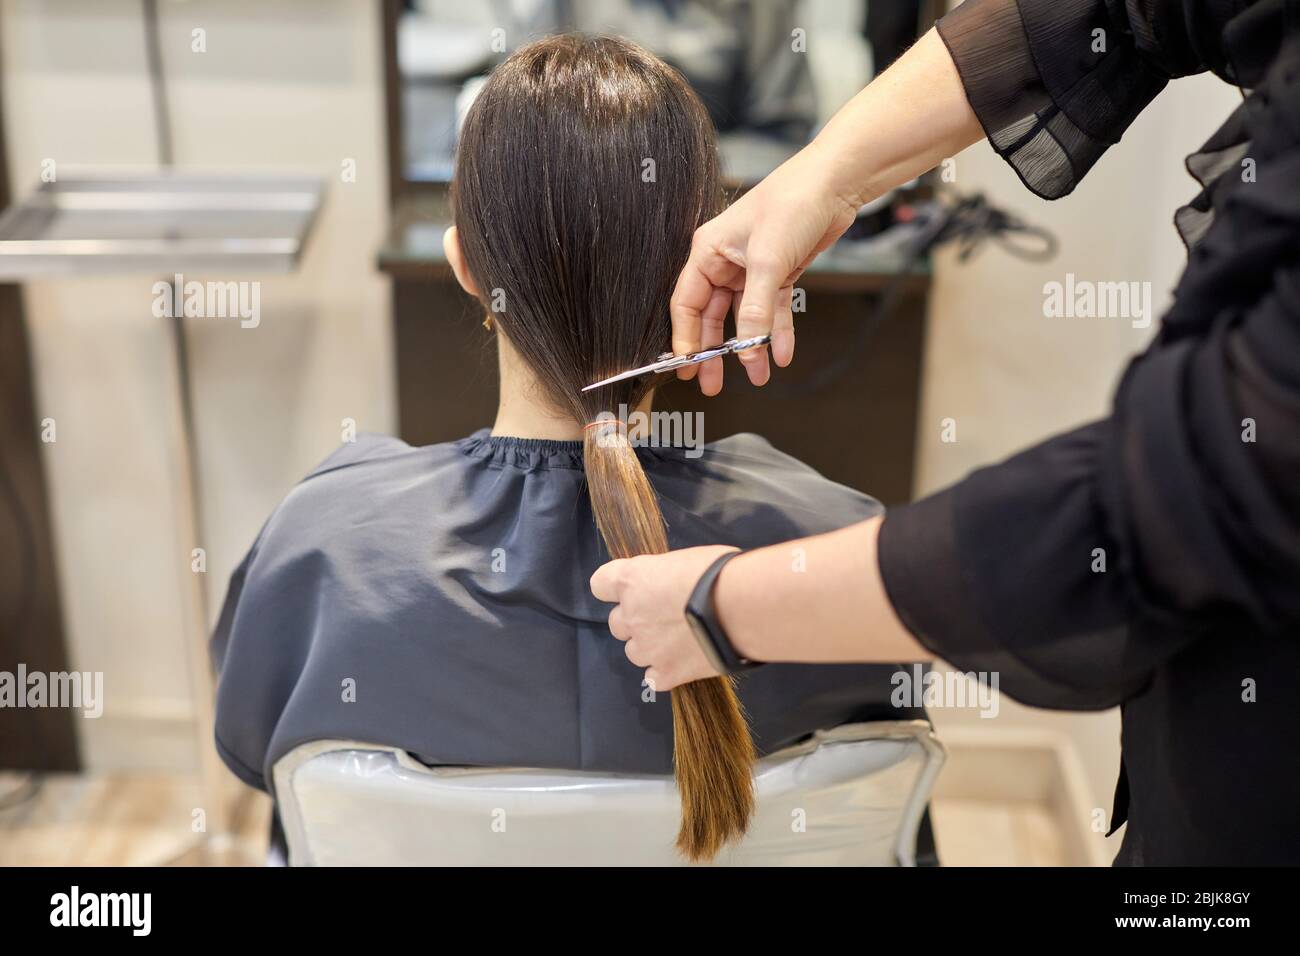 Peluquería cortando el pelo de una mujer, Programa de Donación de Cabello, Salón de peluquería y Clínica de Belleza. Foto de stock